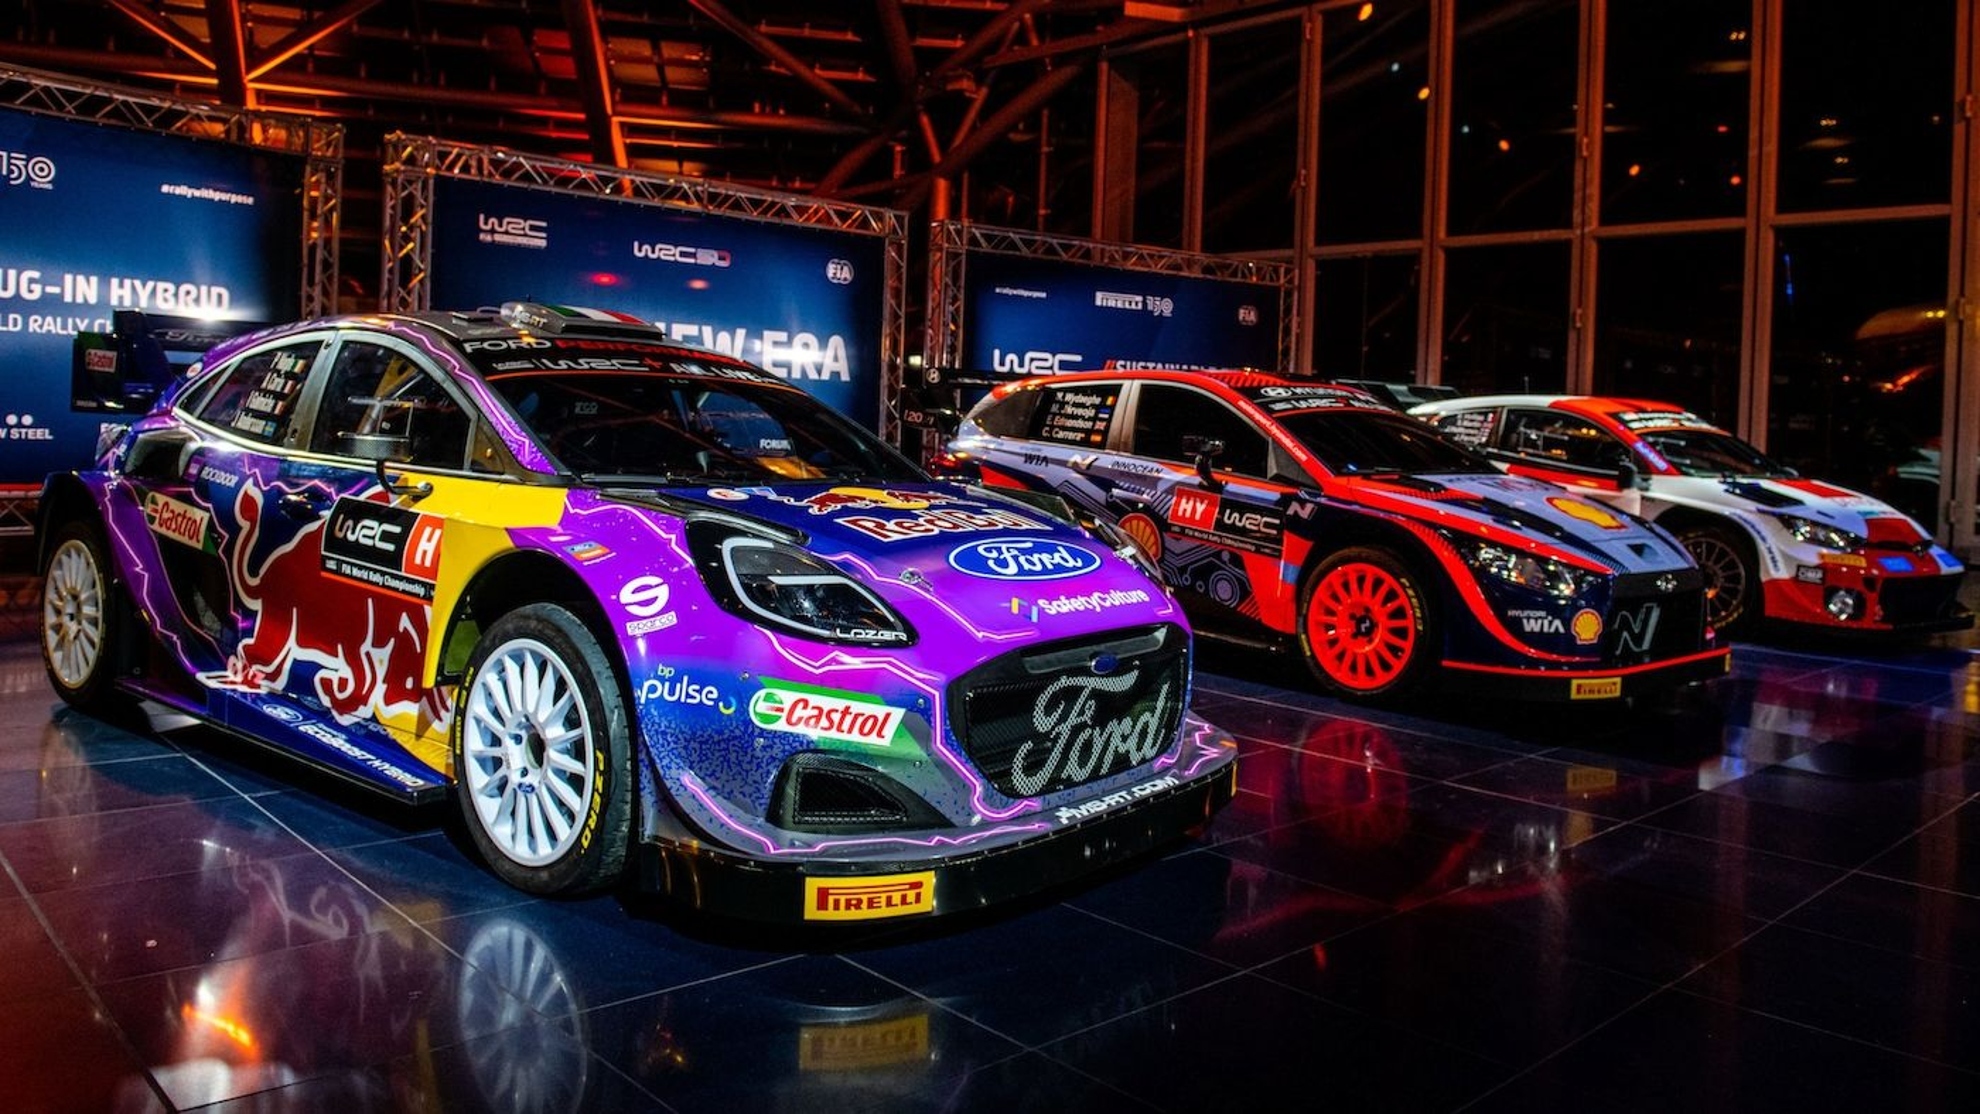 Los nuevos e innovadores Rally1 hbridos.